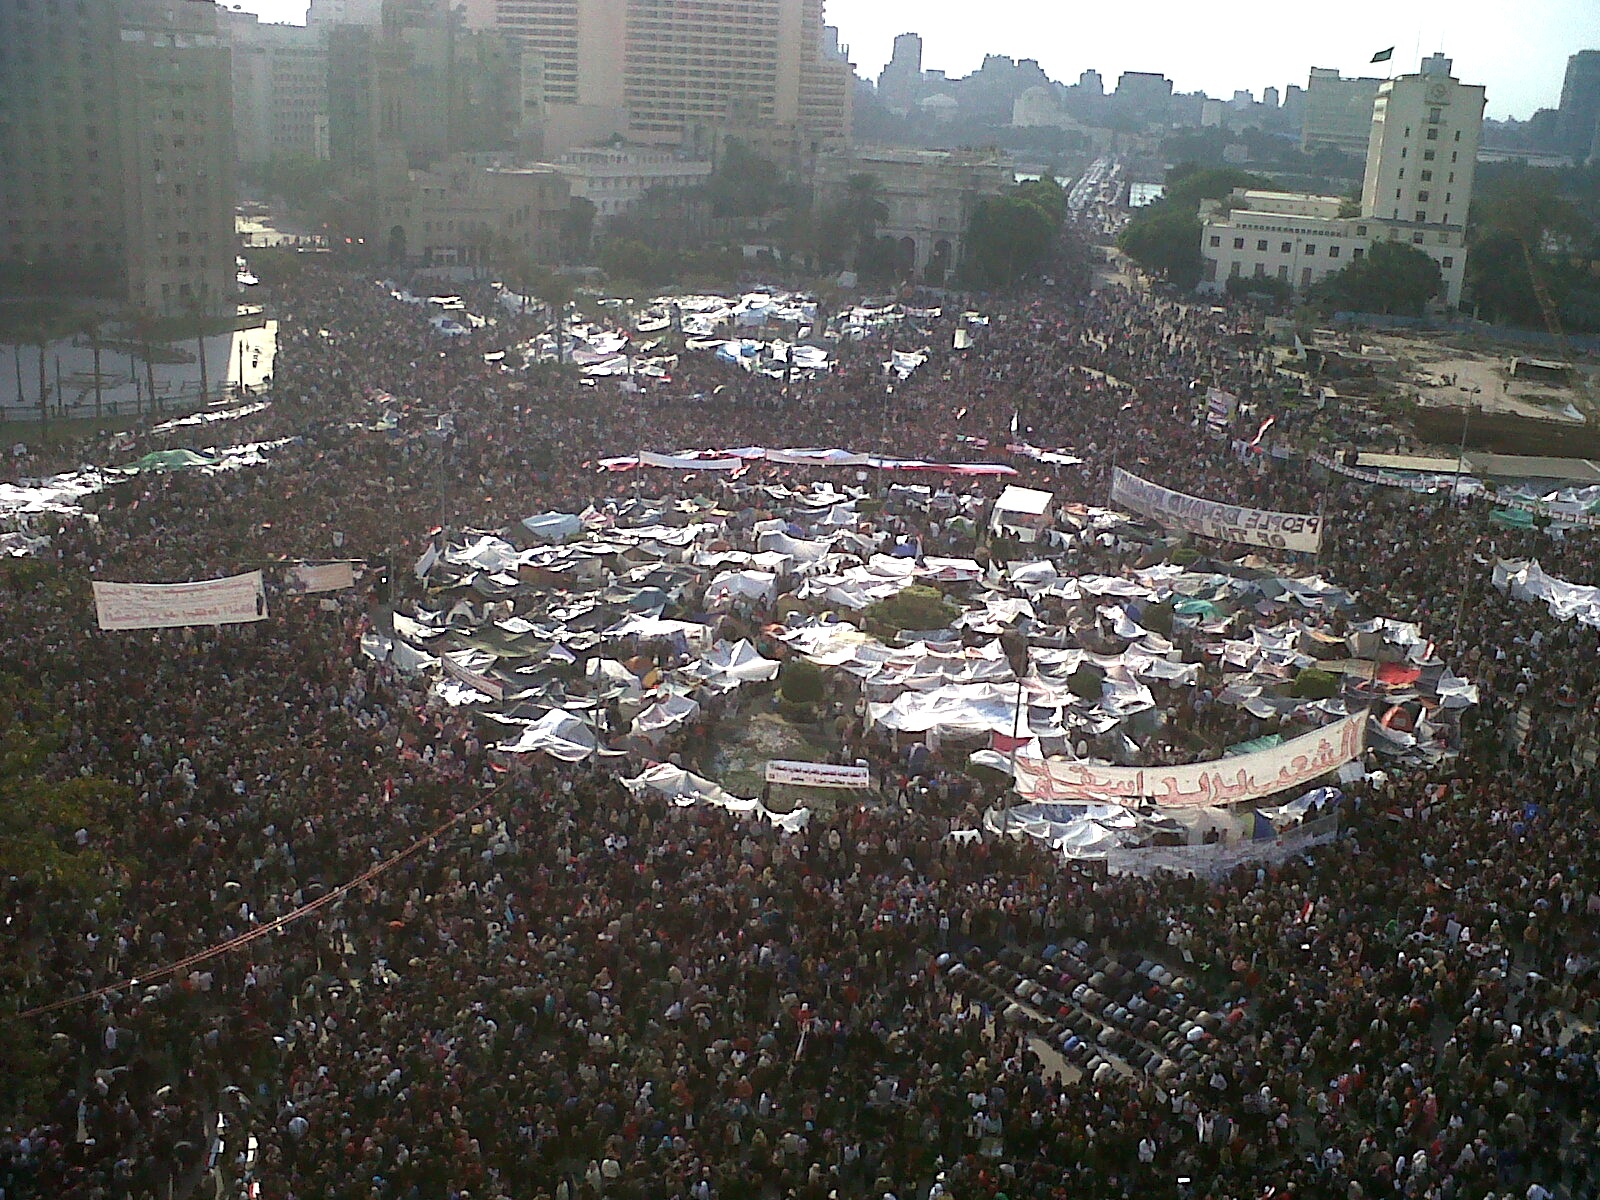 La place Tahrir en février 2011 - Crédit photo : Wikimedia Commons 